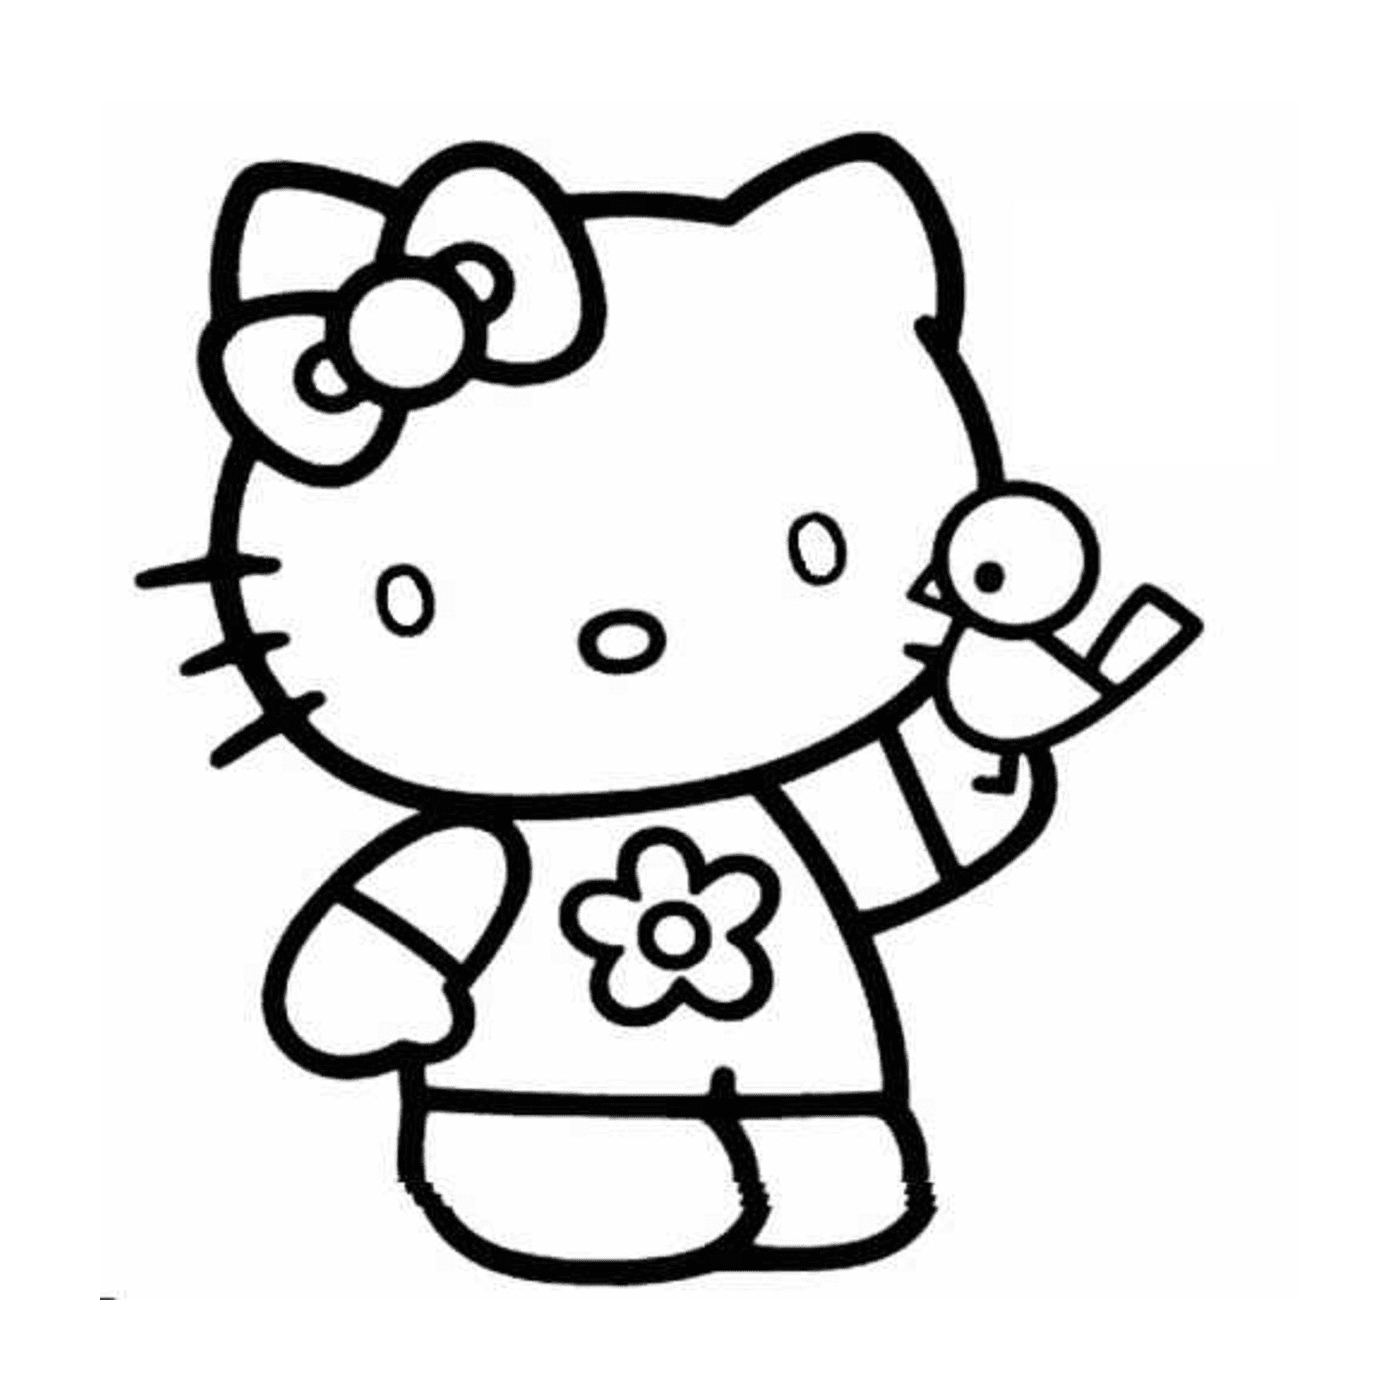  Hello Kitty holding a bird 